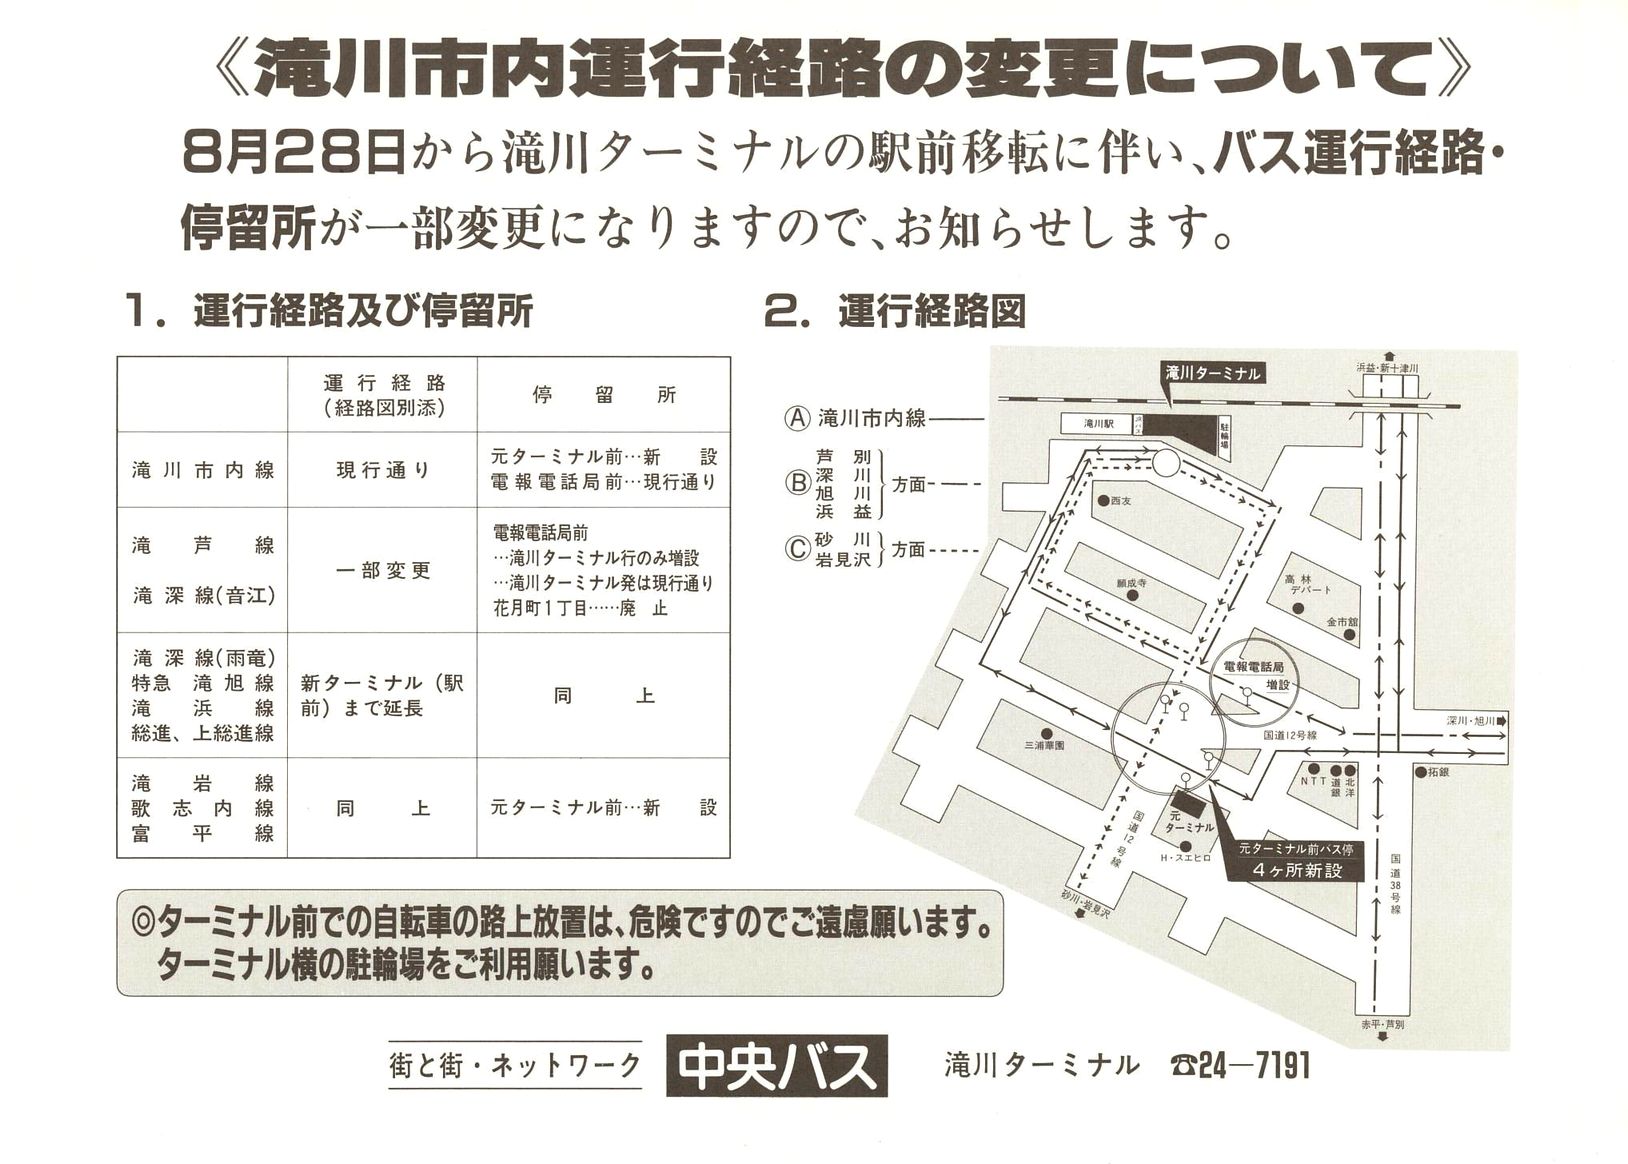 1988-08-28改正_北海道中央バス(空知)_滝川ターミナル移転チラシ